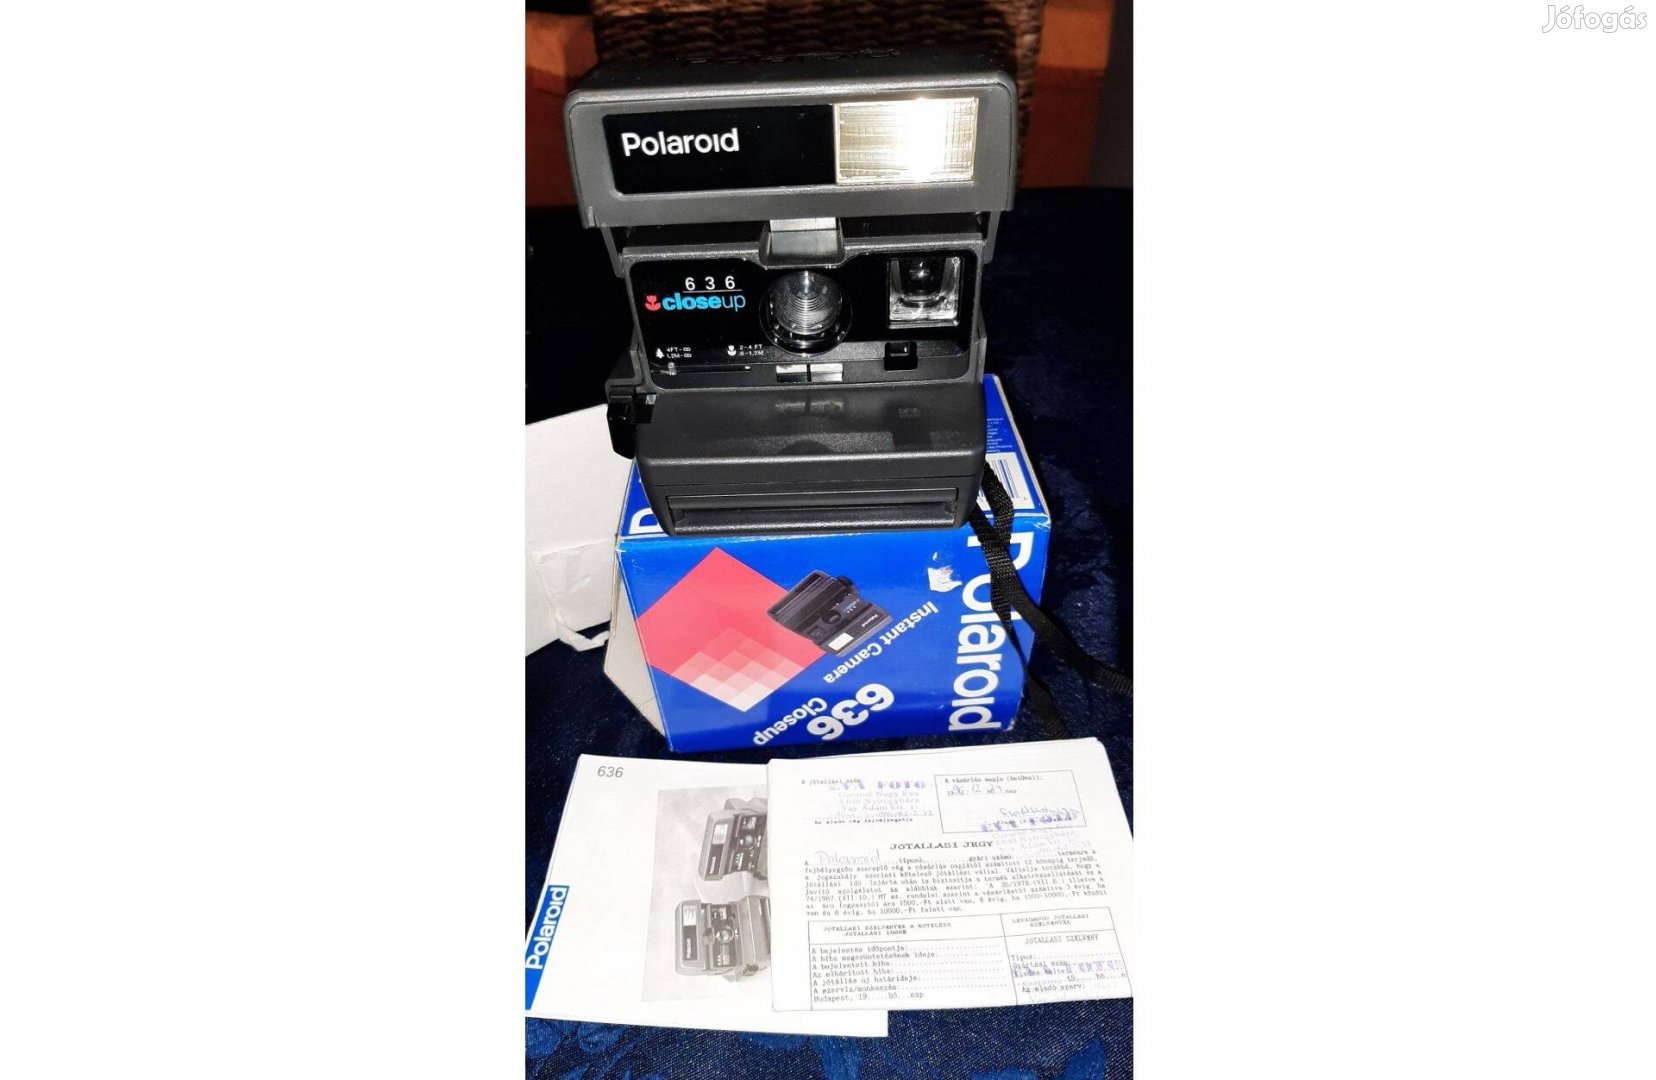 Polaroid Closeup 360 fényképezőgép dobozában papírokkal